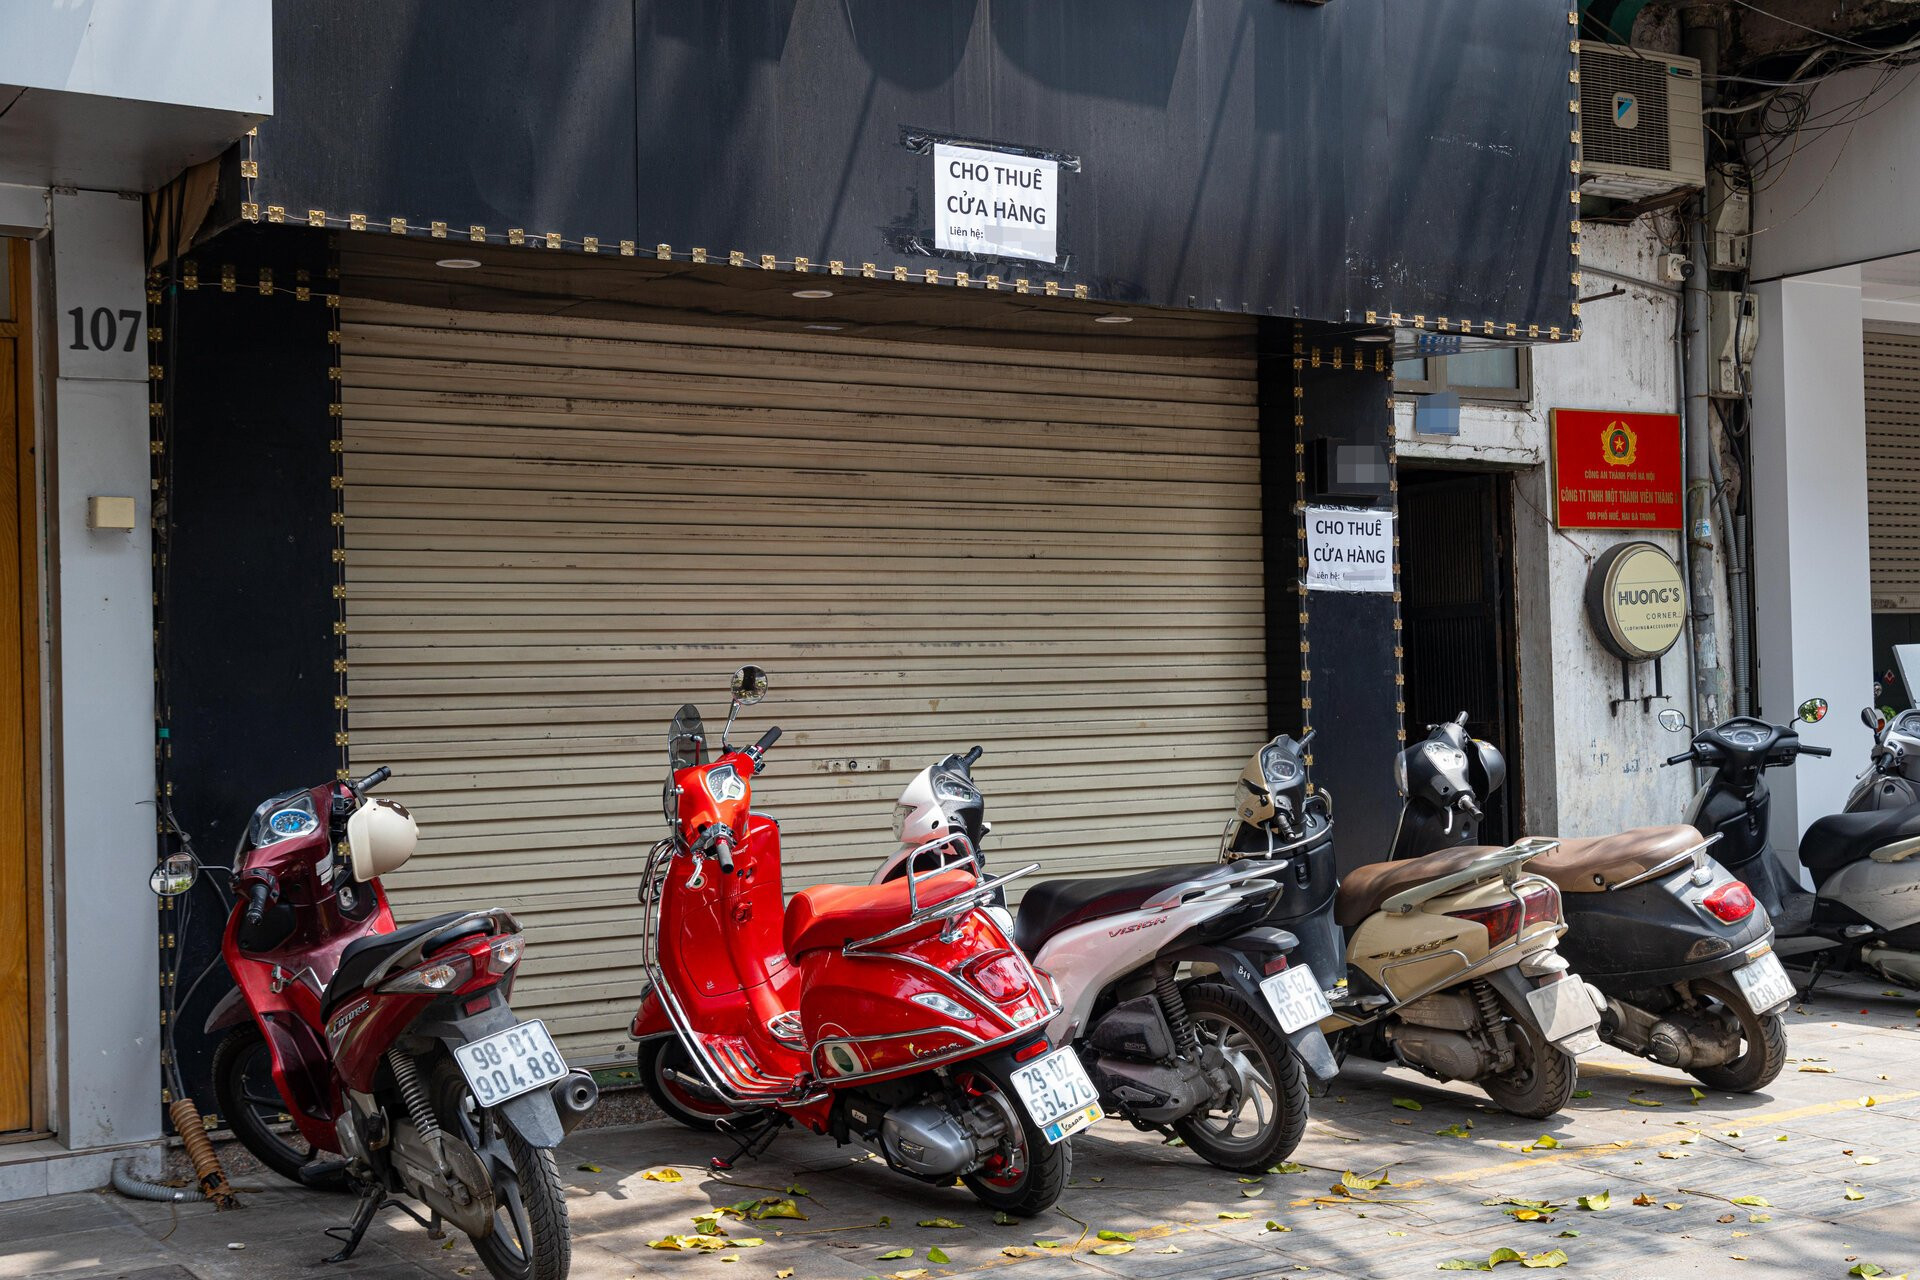 Hàng chục cửa hàng trên đất vàng phố Huế, Hà Nội đóng cửa, treo biển cho thuê - 13